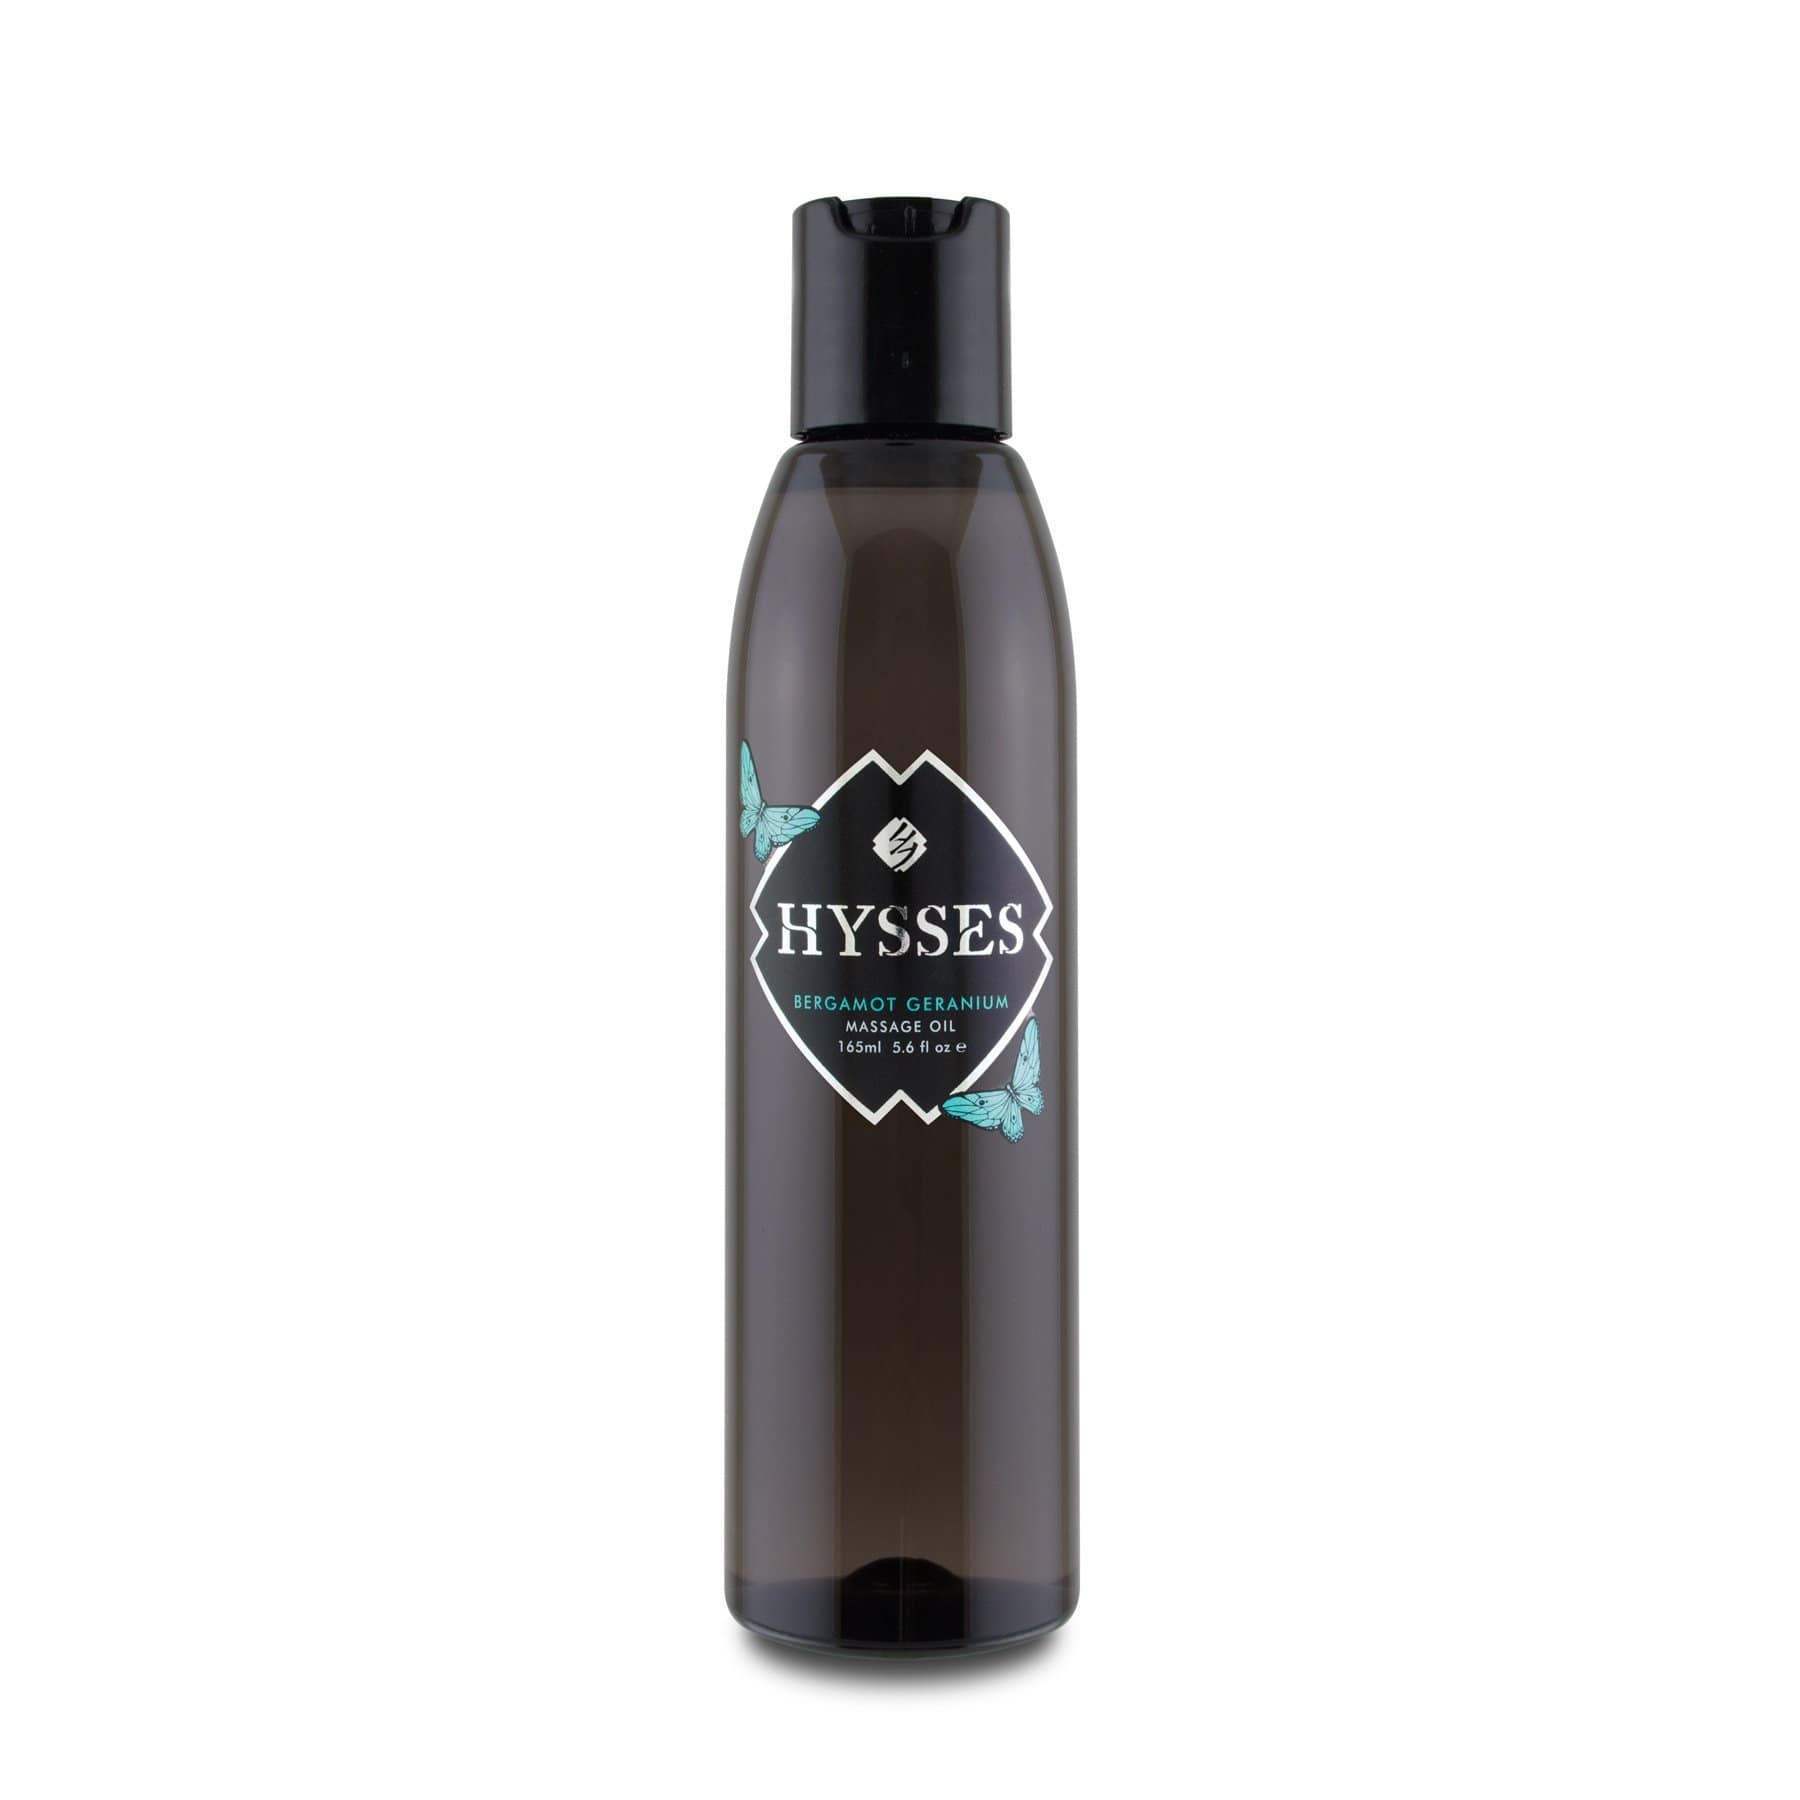 Hysses Body Care Massage Oil Bergamot Geranium